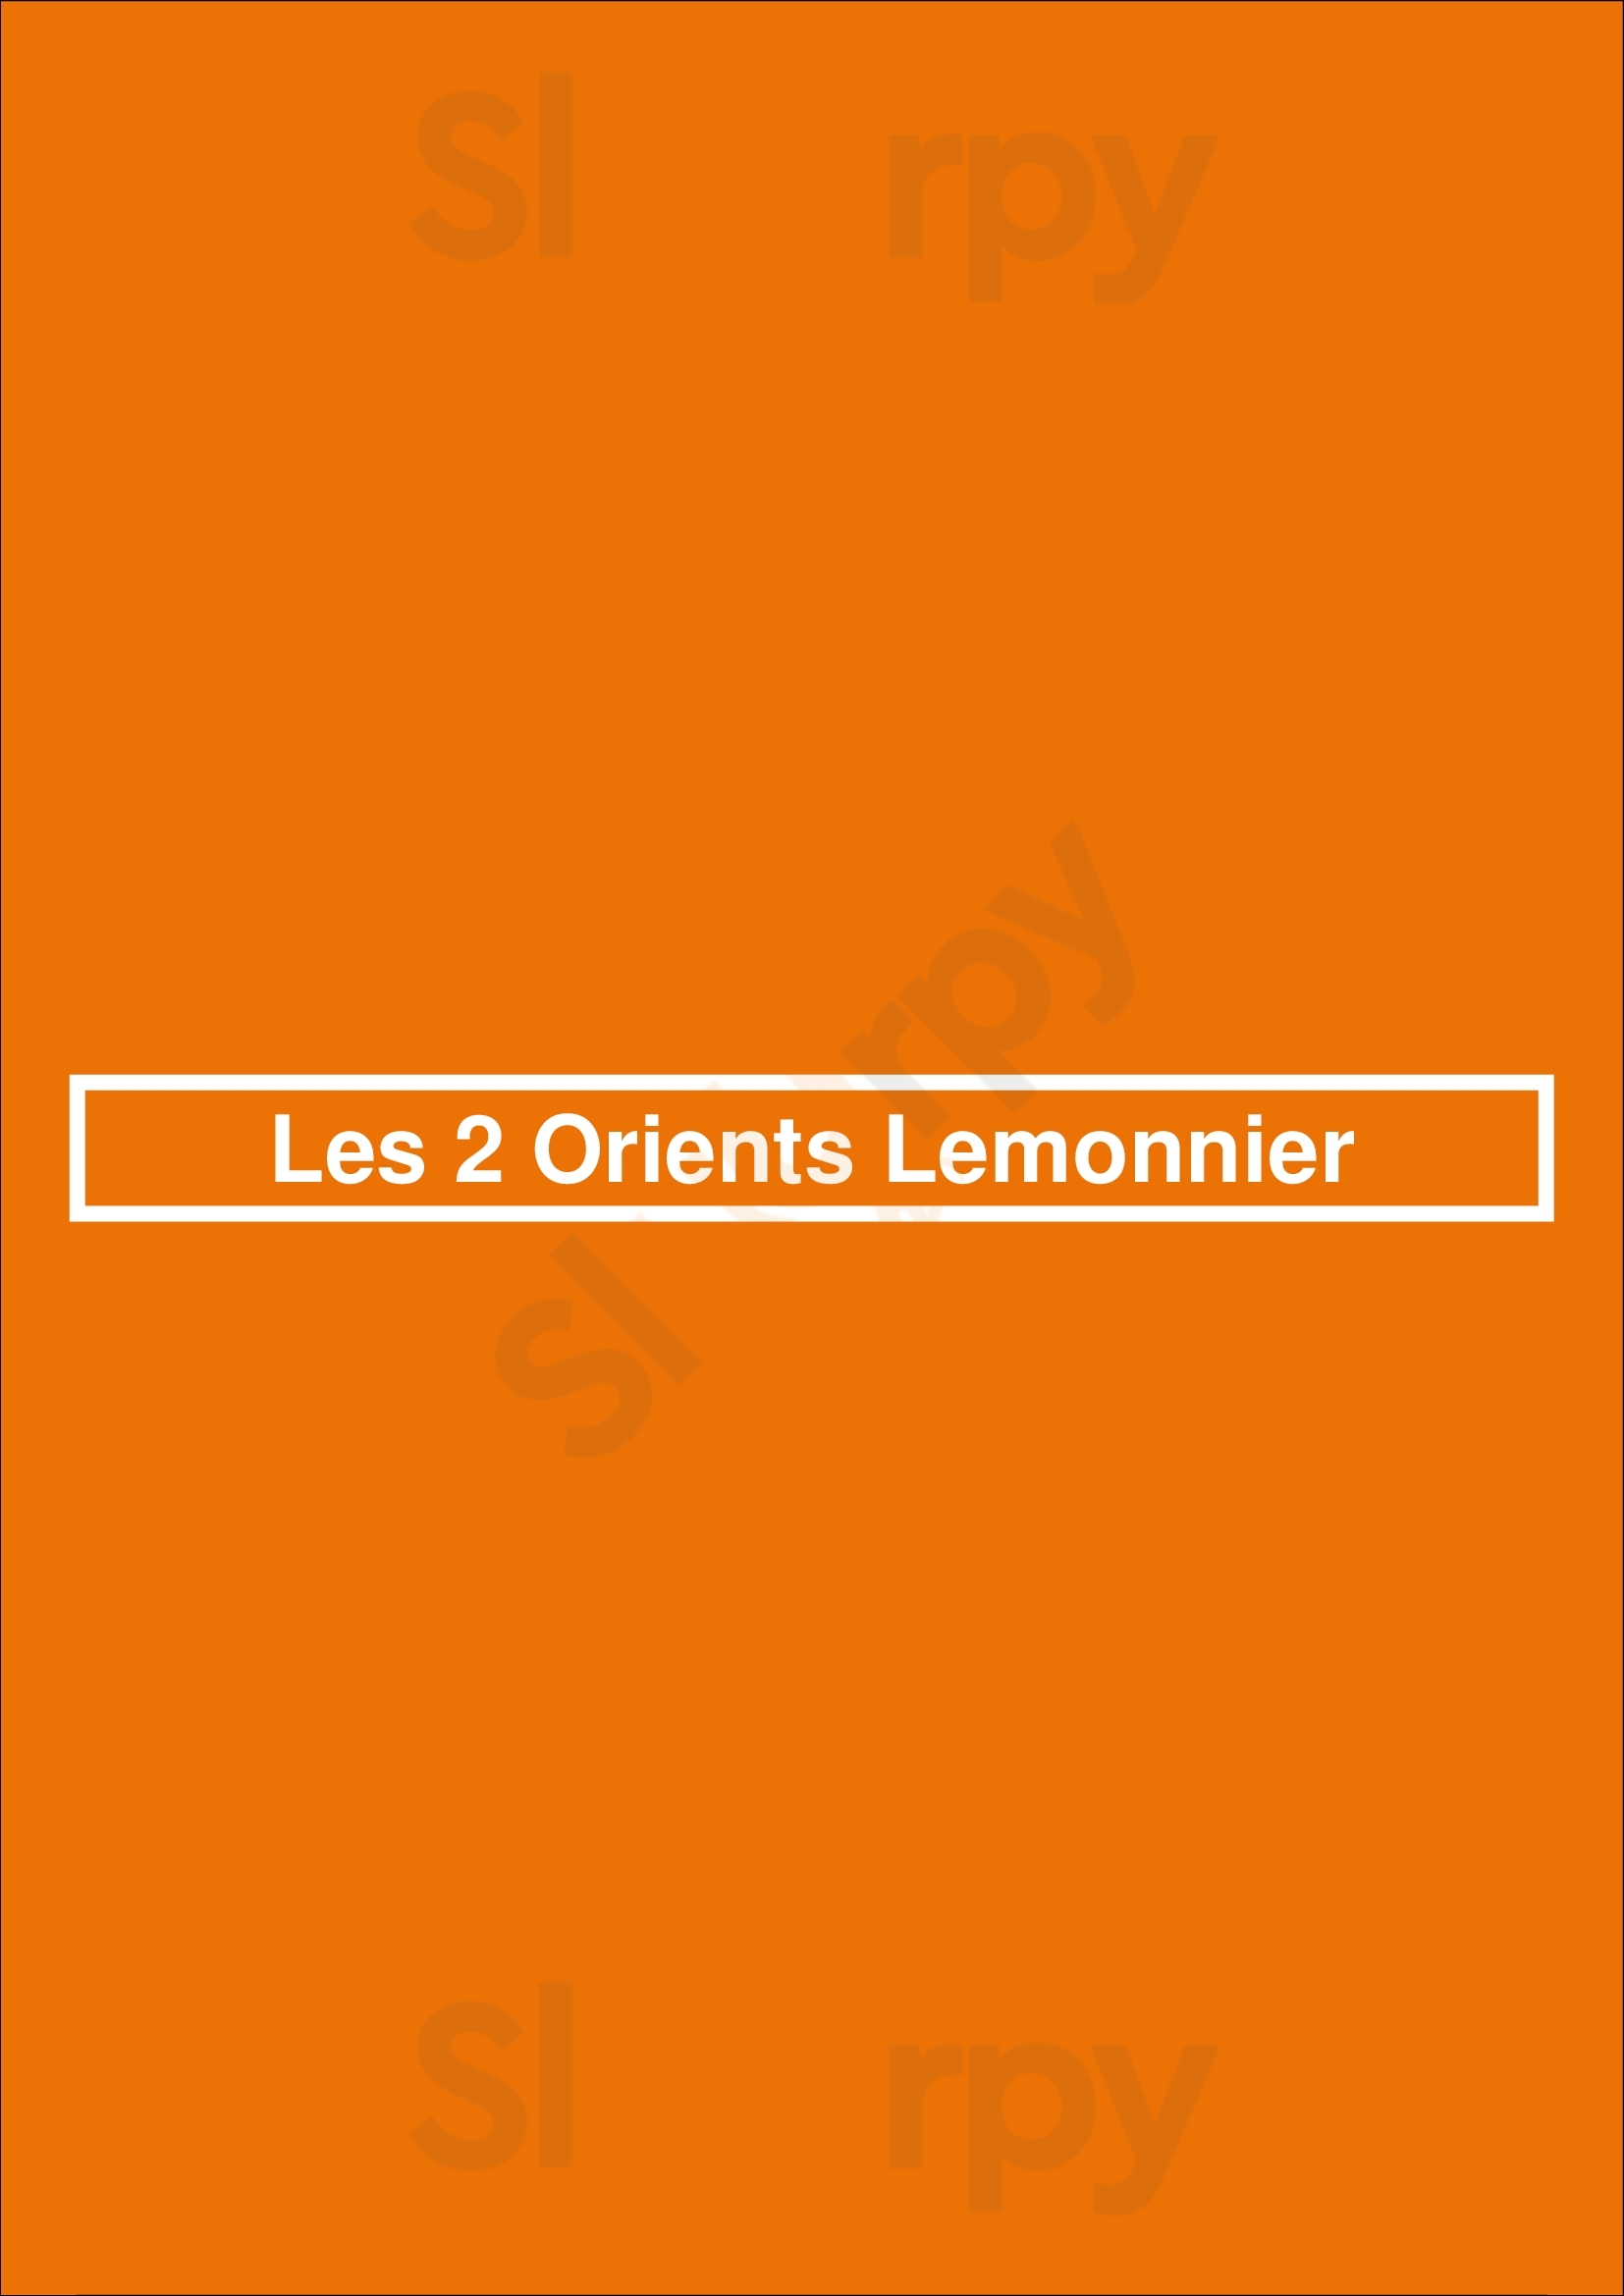 Les 2 Orients Lemonnier Bruxelles Menu - 1